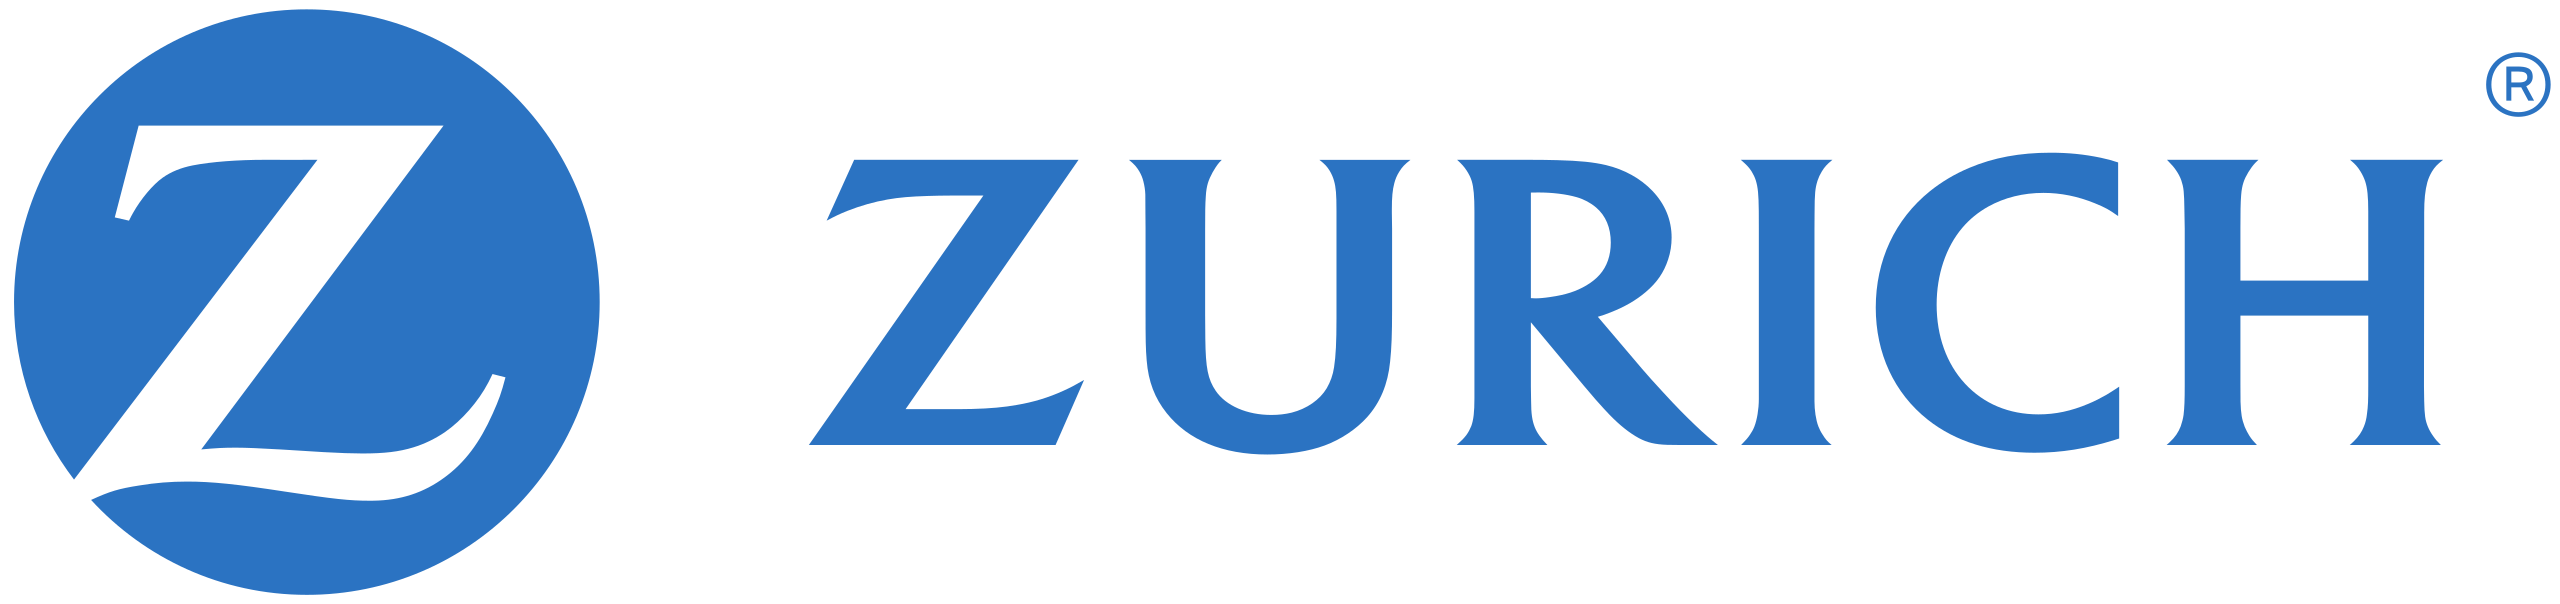 Logotipo da Zurich